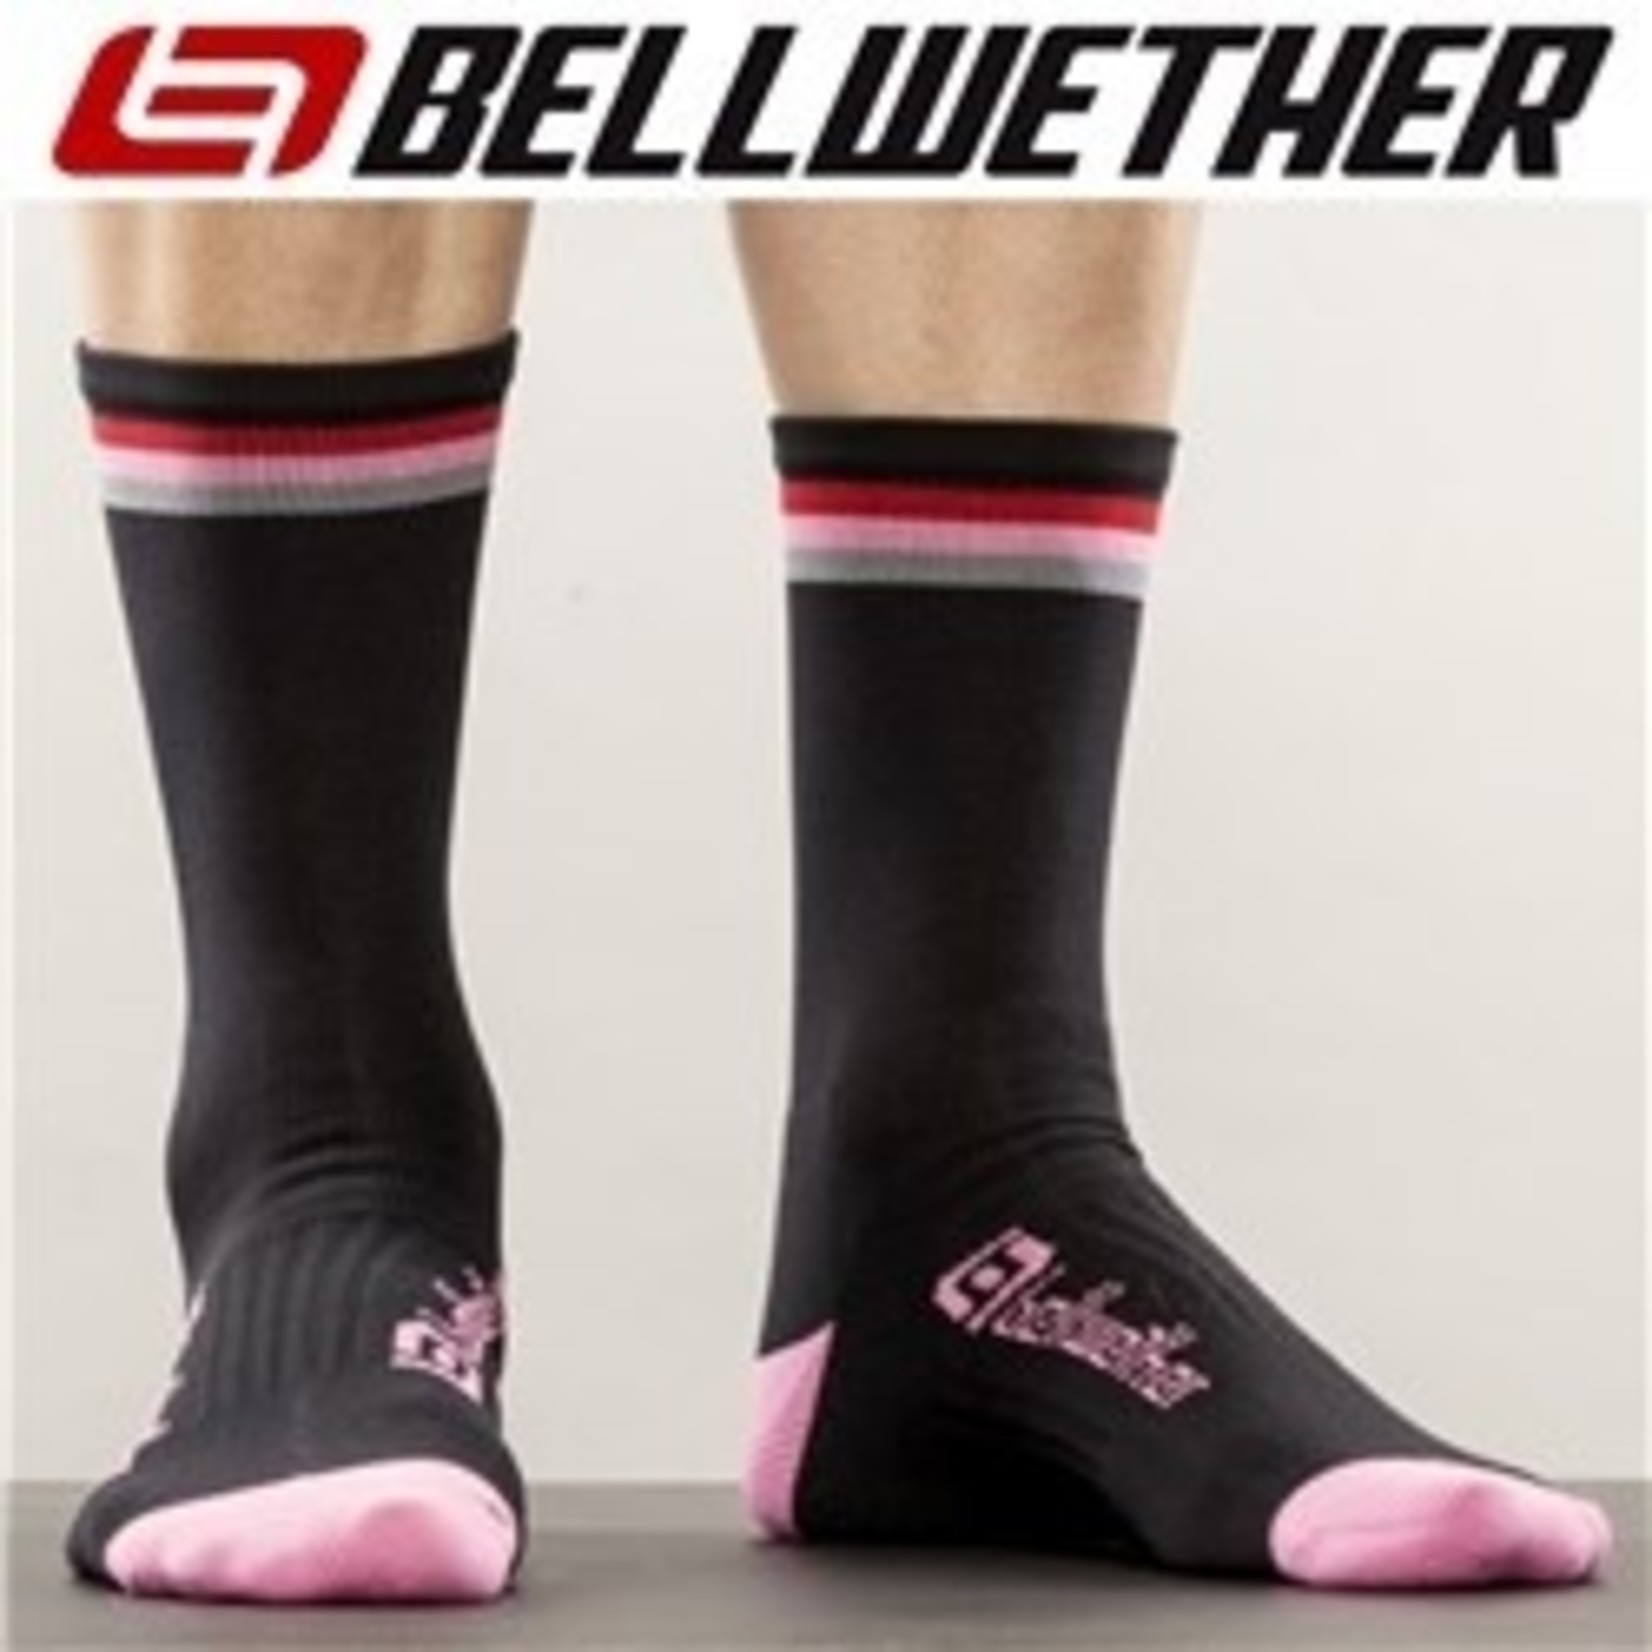 Bellwether Bellwether Cycling Socks - Tilt - Black